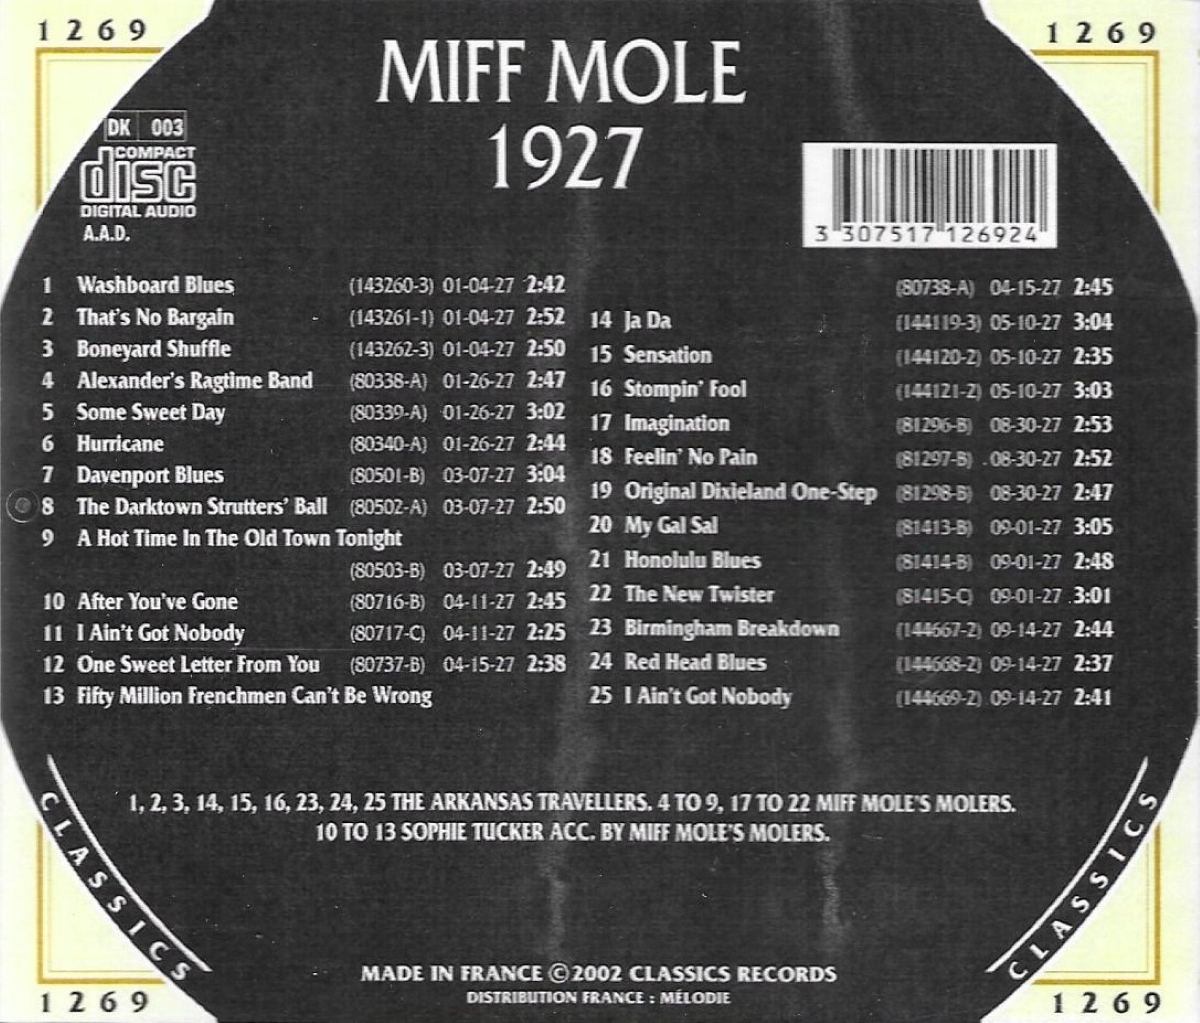 The Chronological Miff Mole: 1927